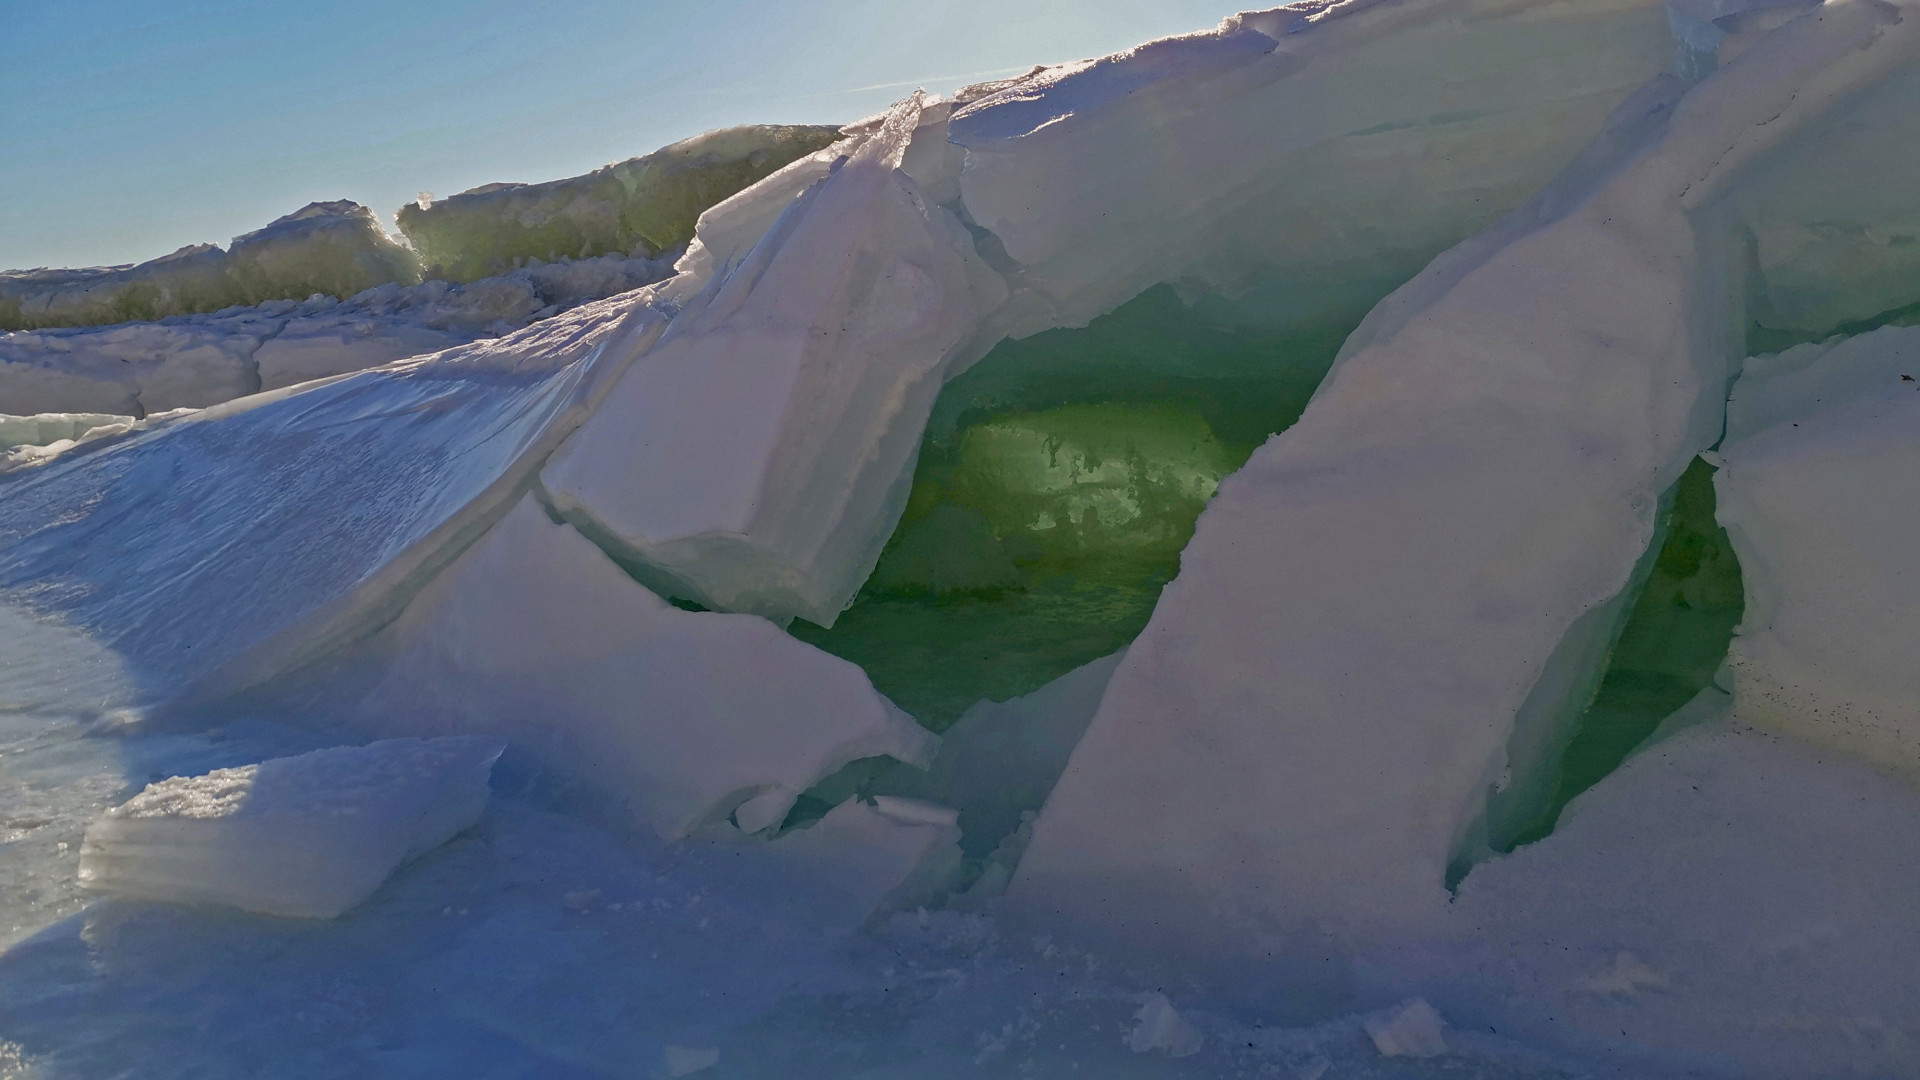 Ледяные складки, напоминающие берлогу белого медведя. Фото: Александр Дёмин, участник конкурса РГО «Самая красивая страна»